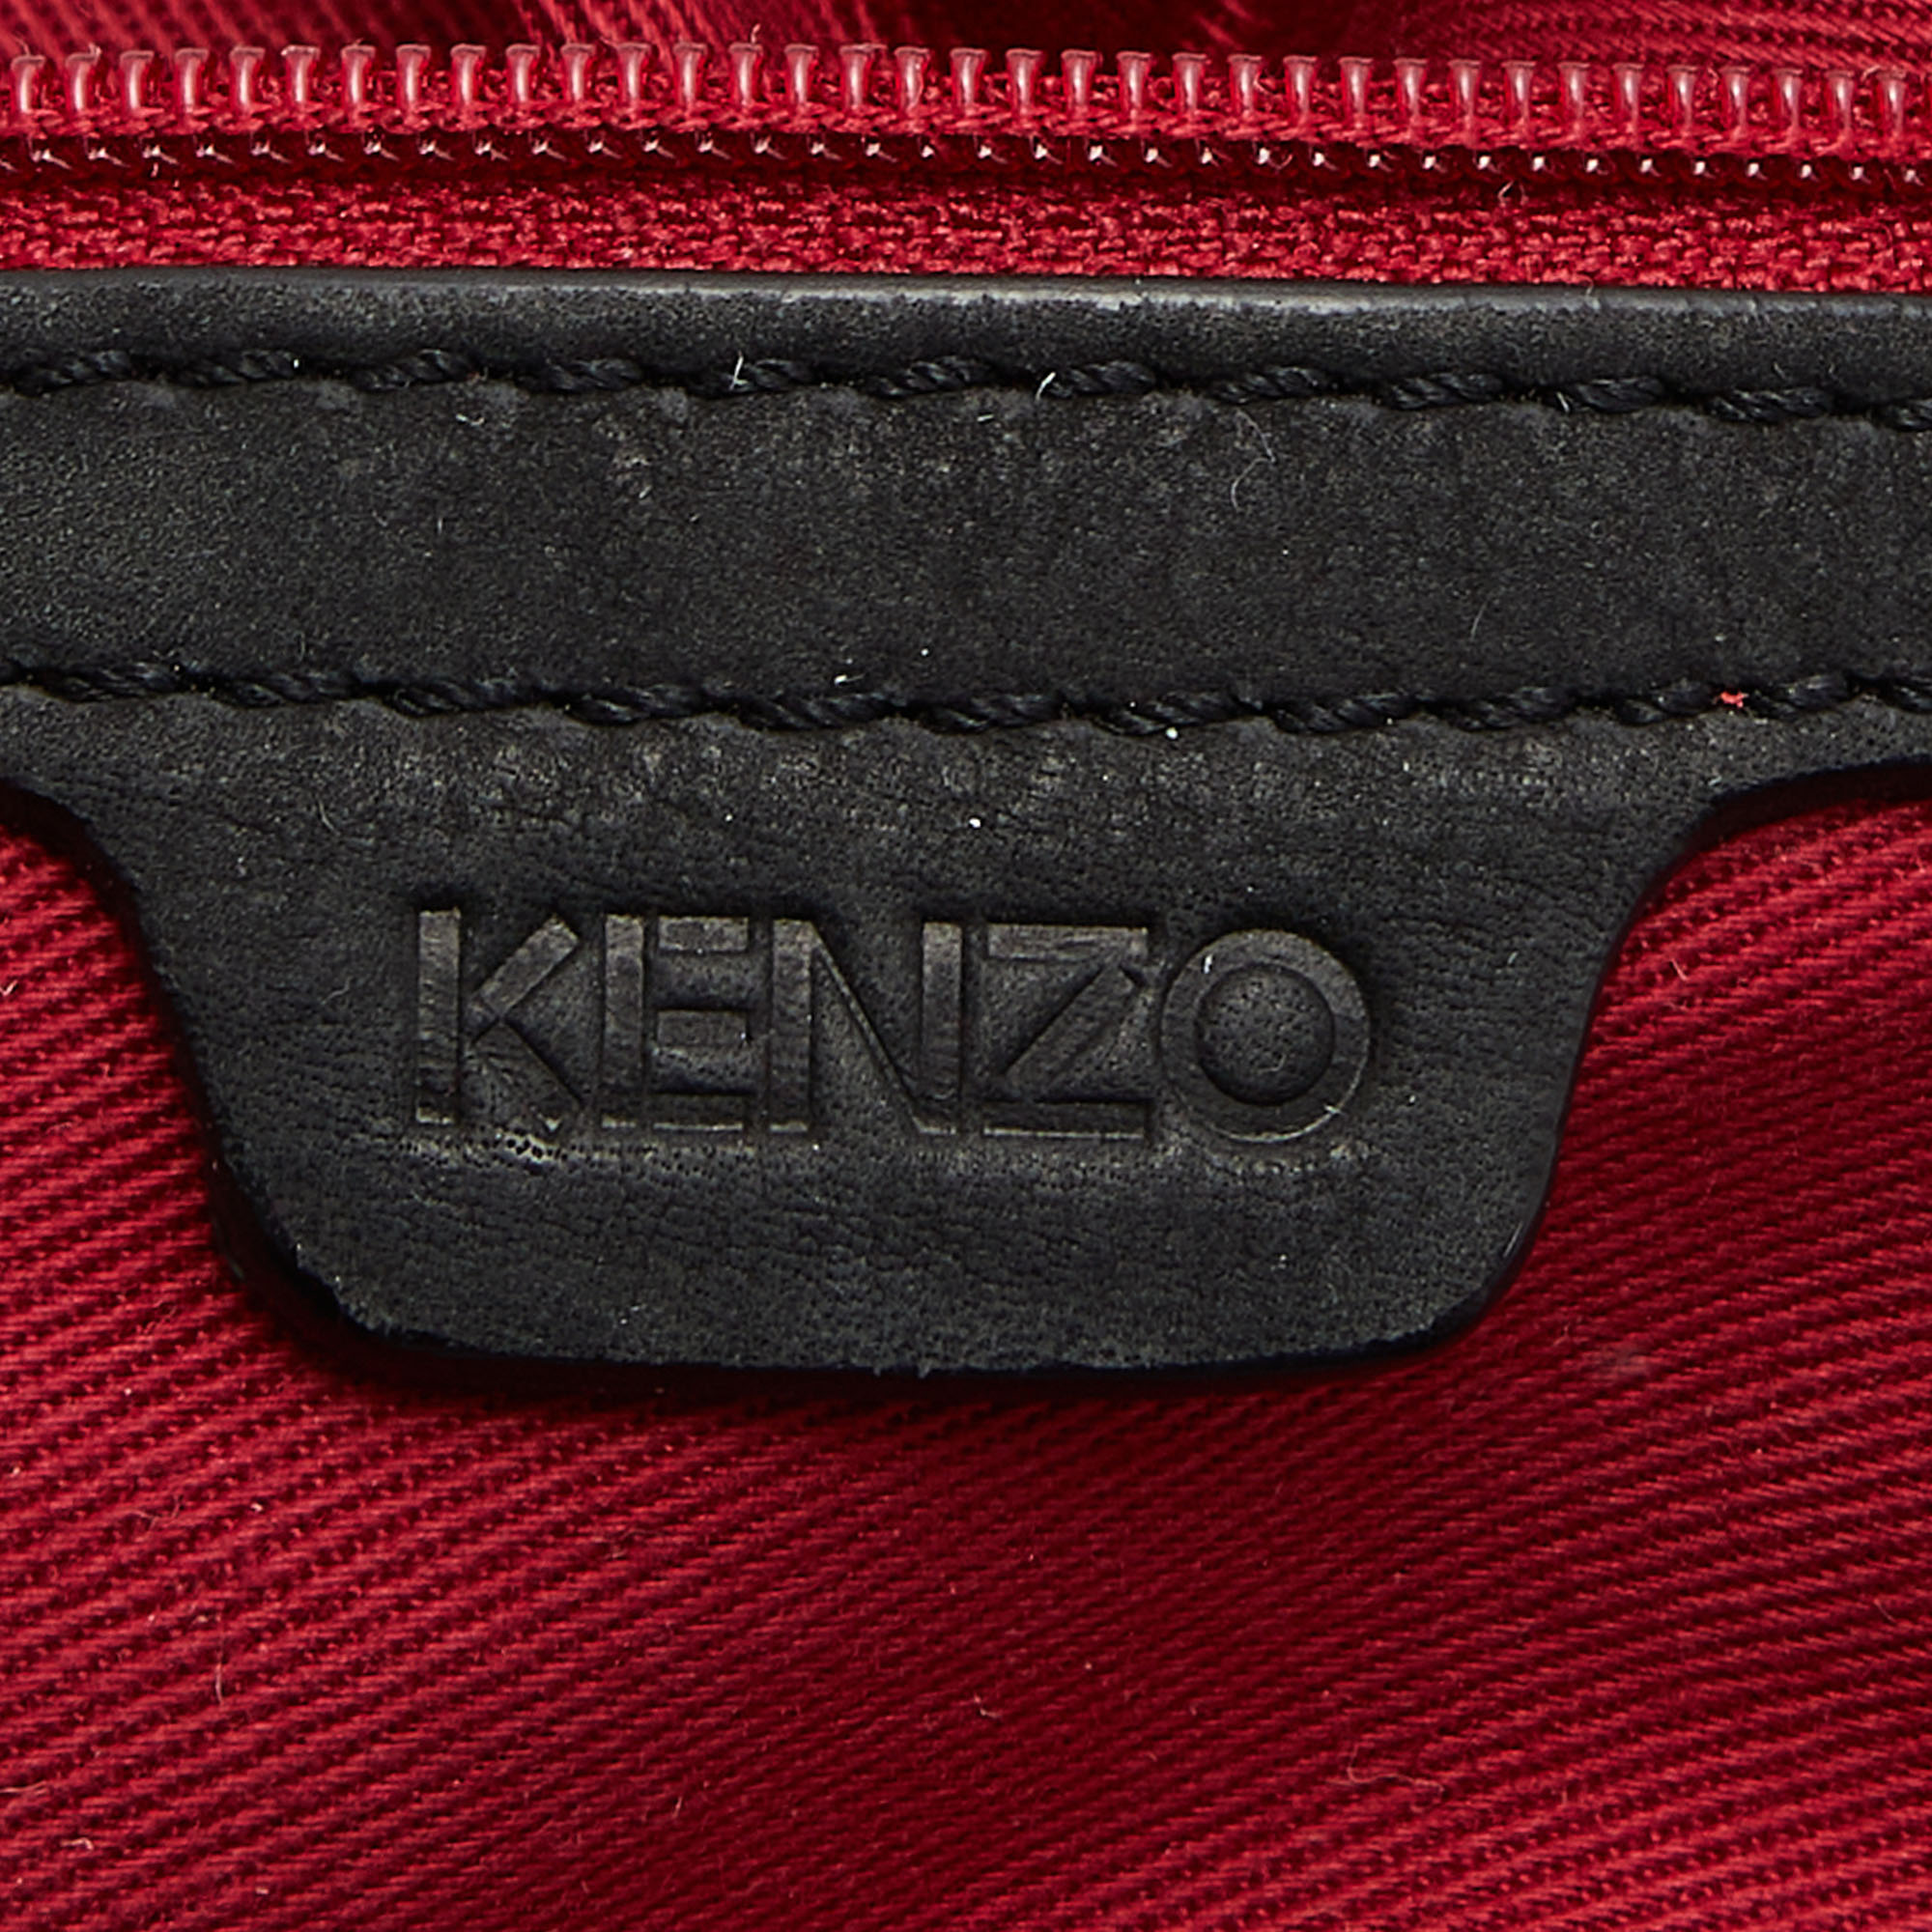 Kenzo Black Leather Shoulder Bag